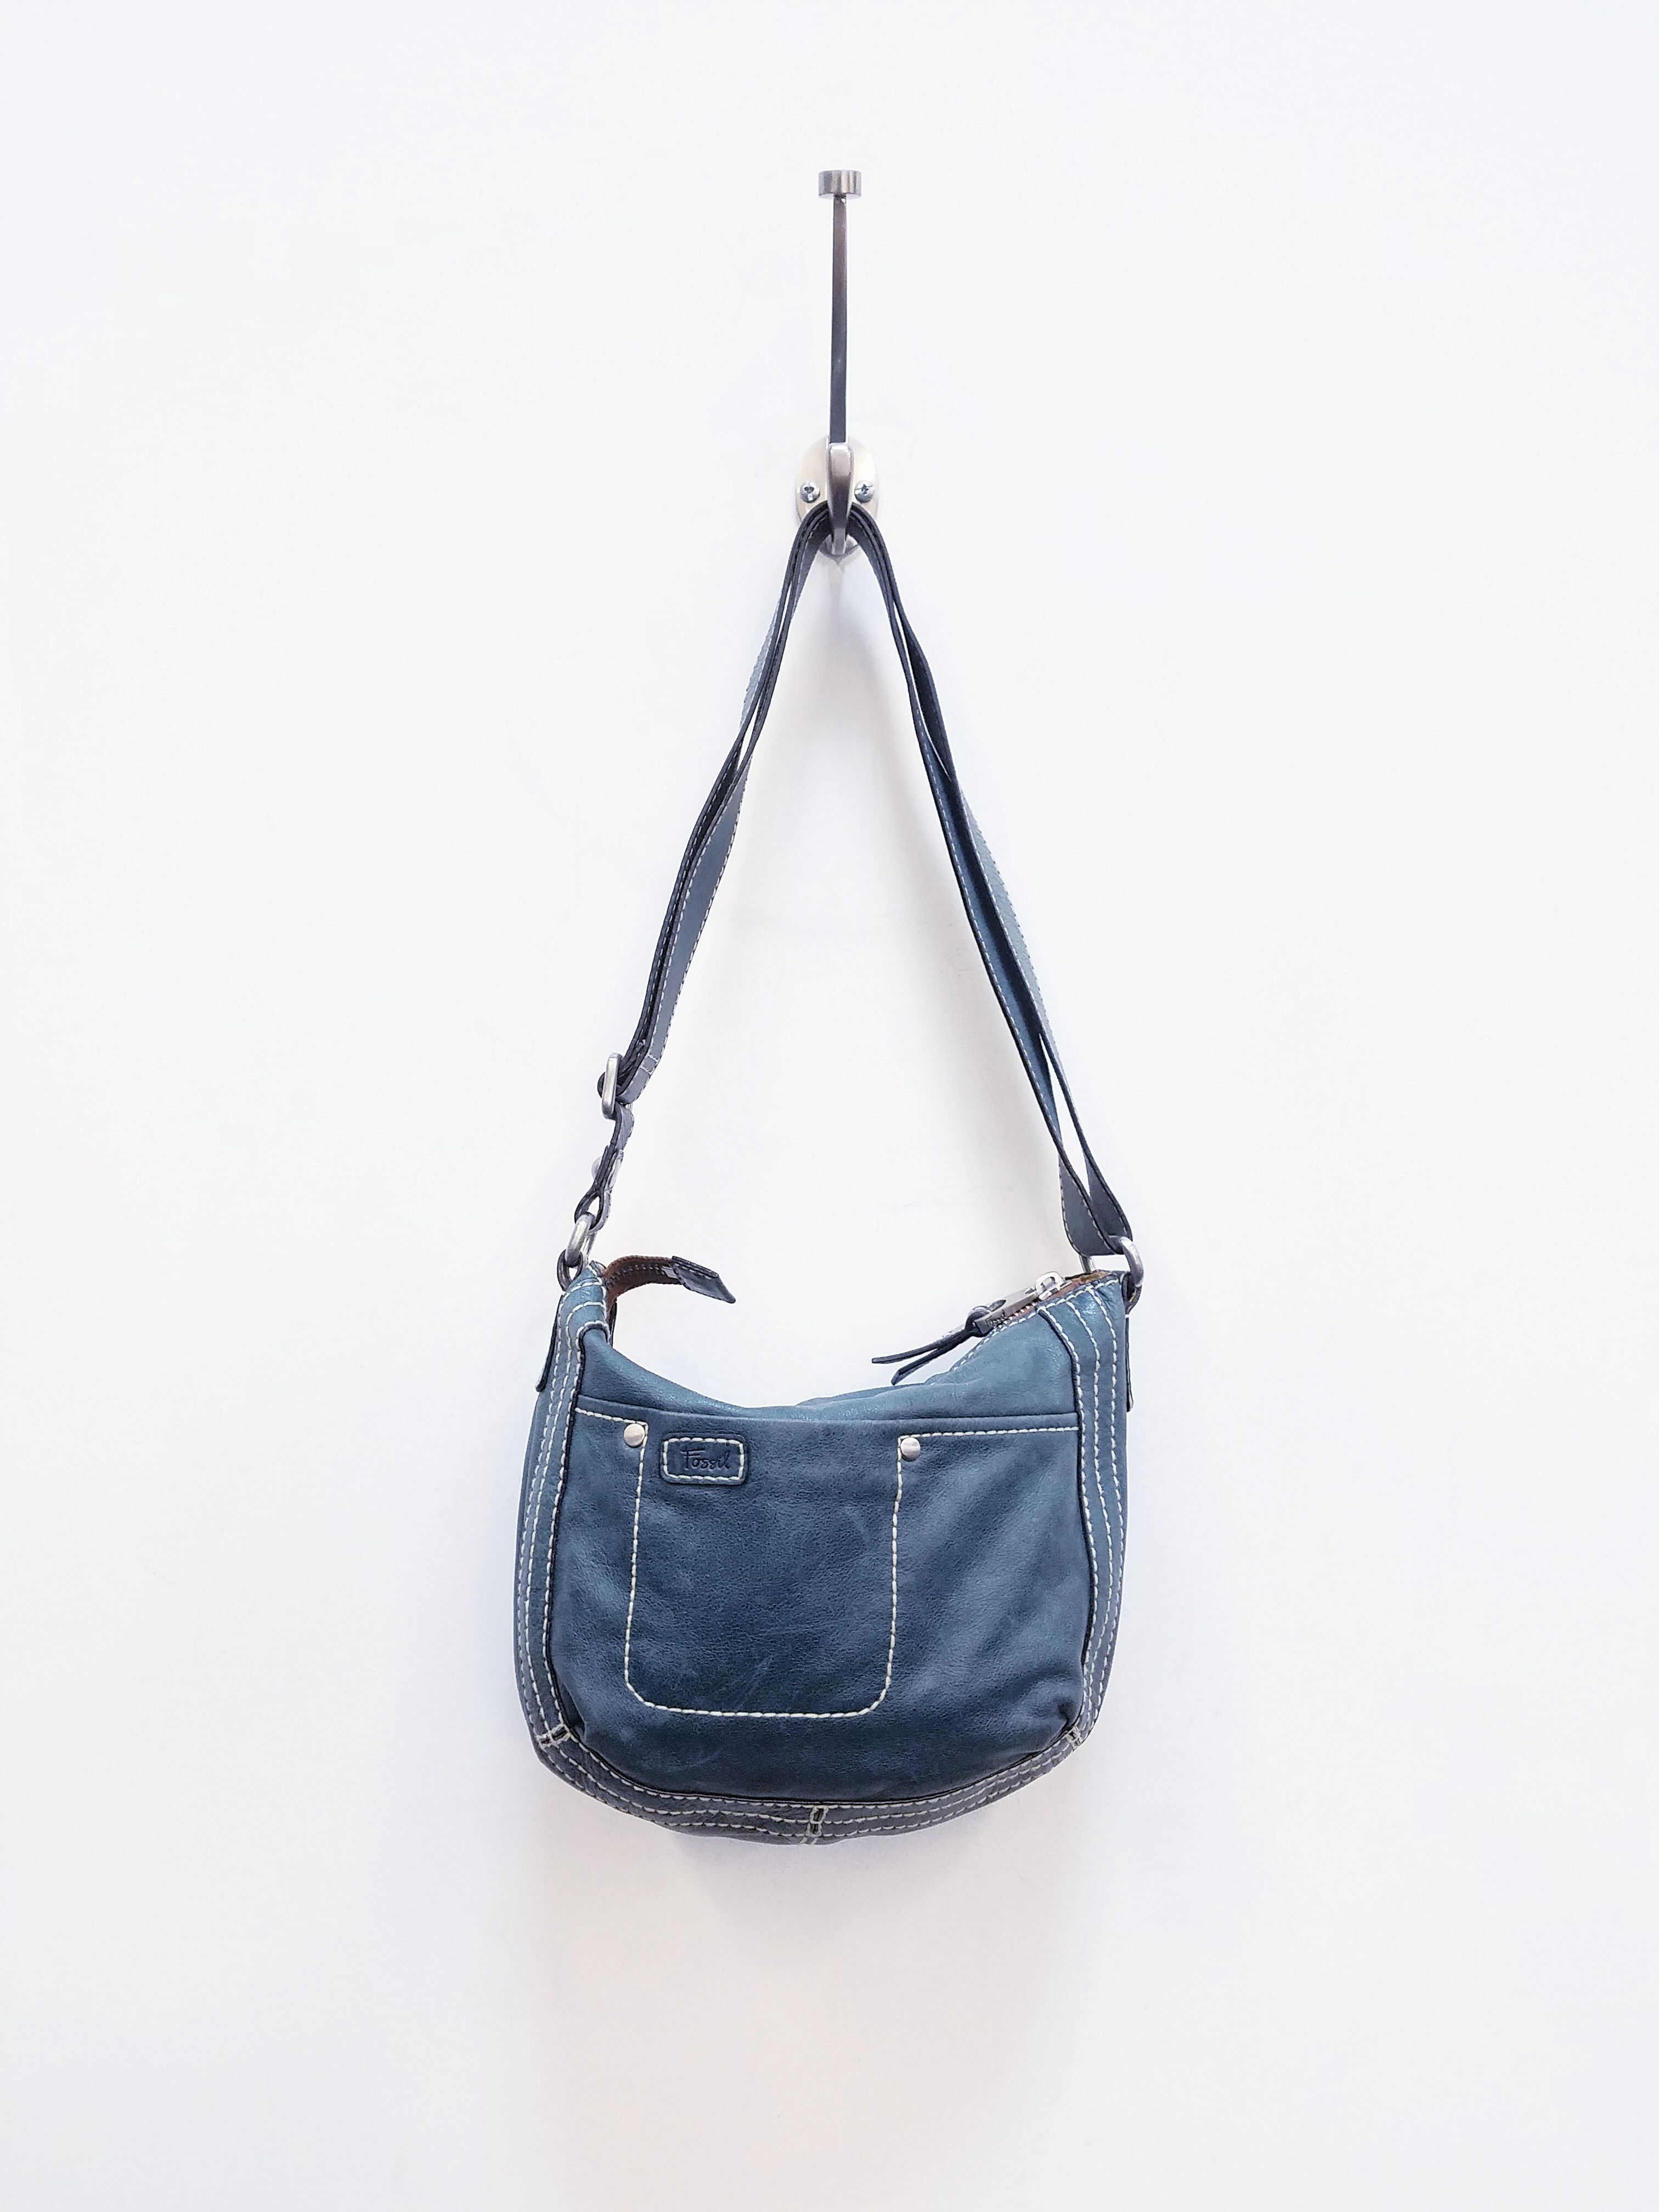 Fossil Leather Camel Purse | Camel purses, Leather, Blue clutch purse